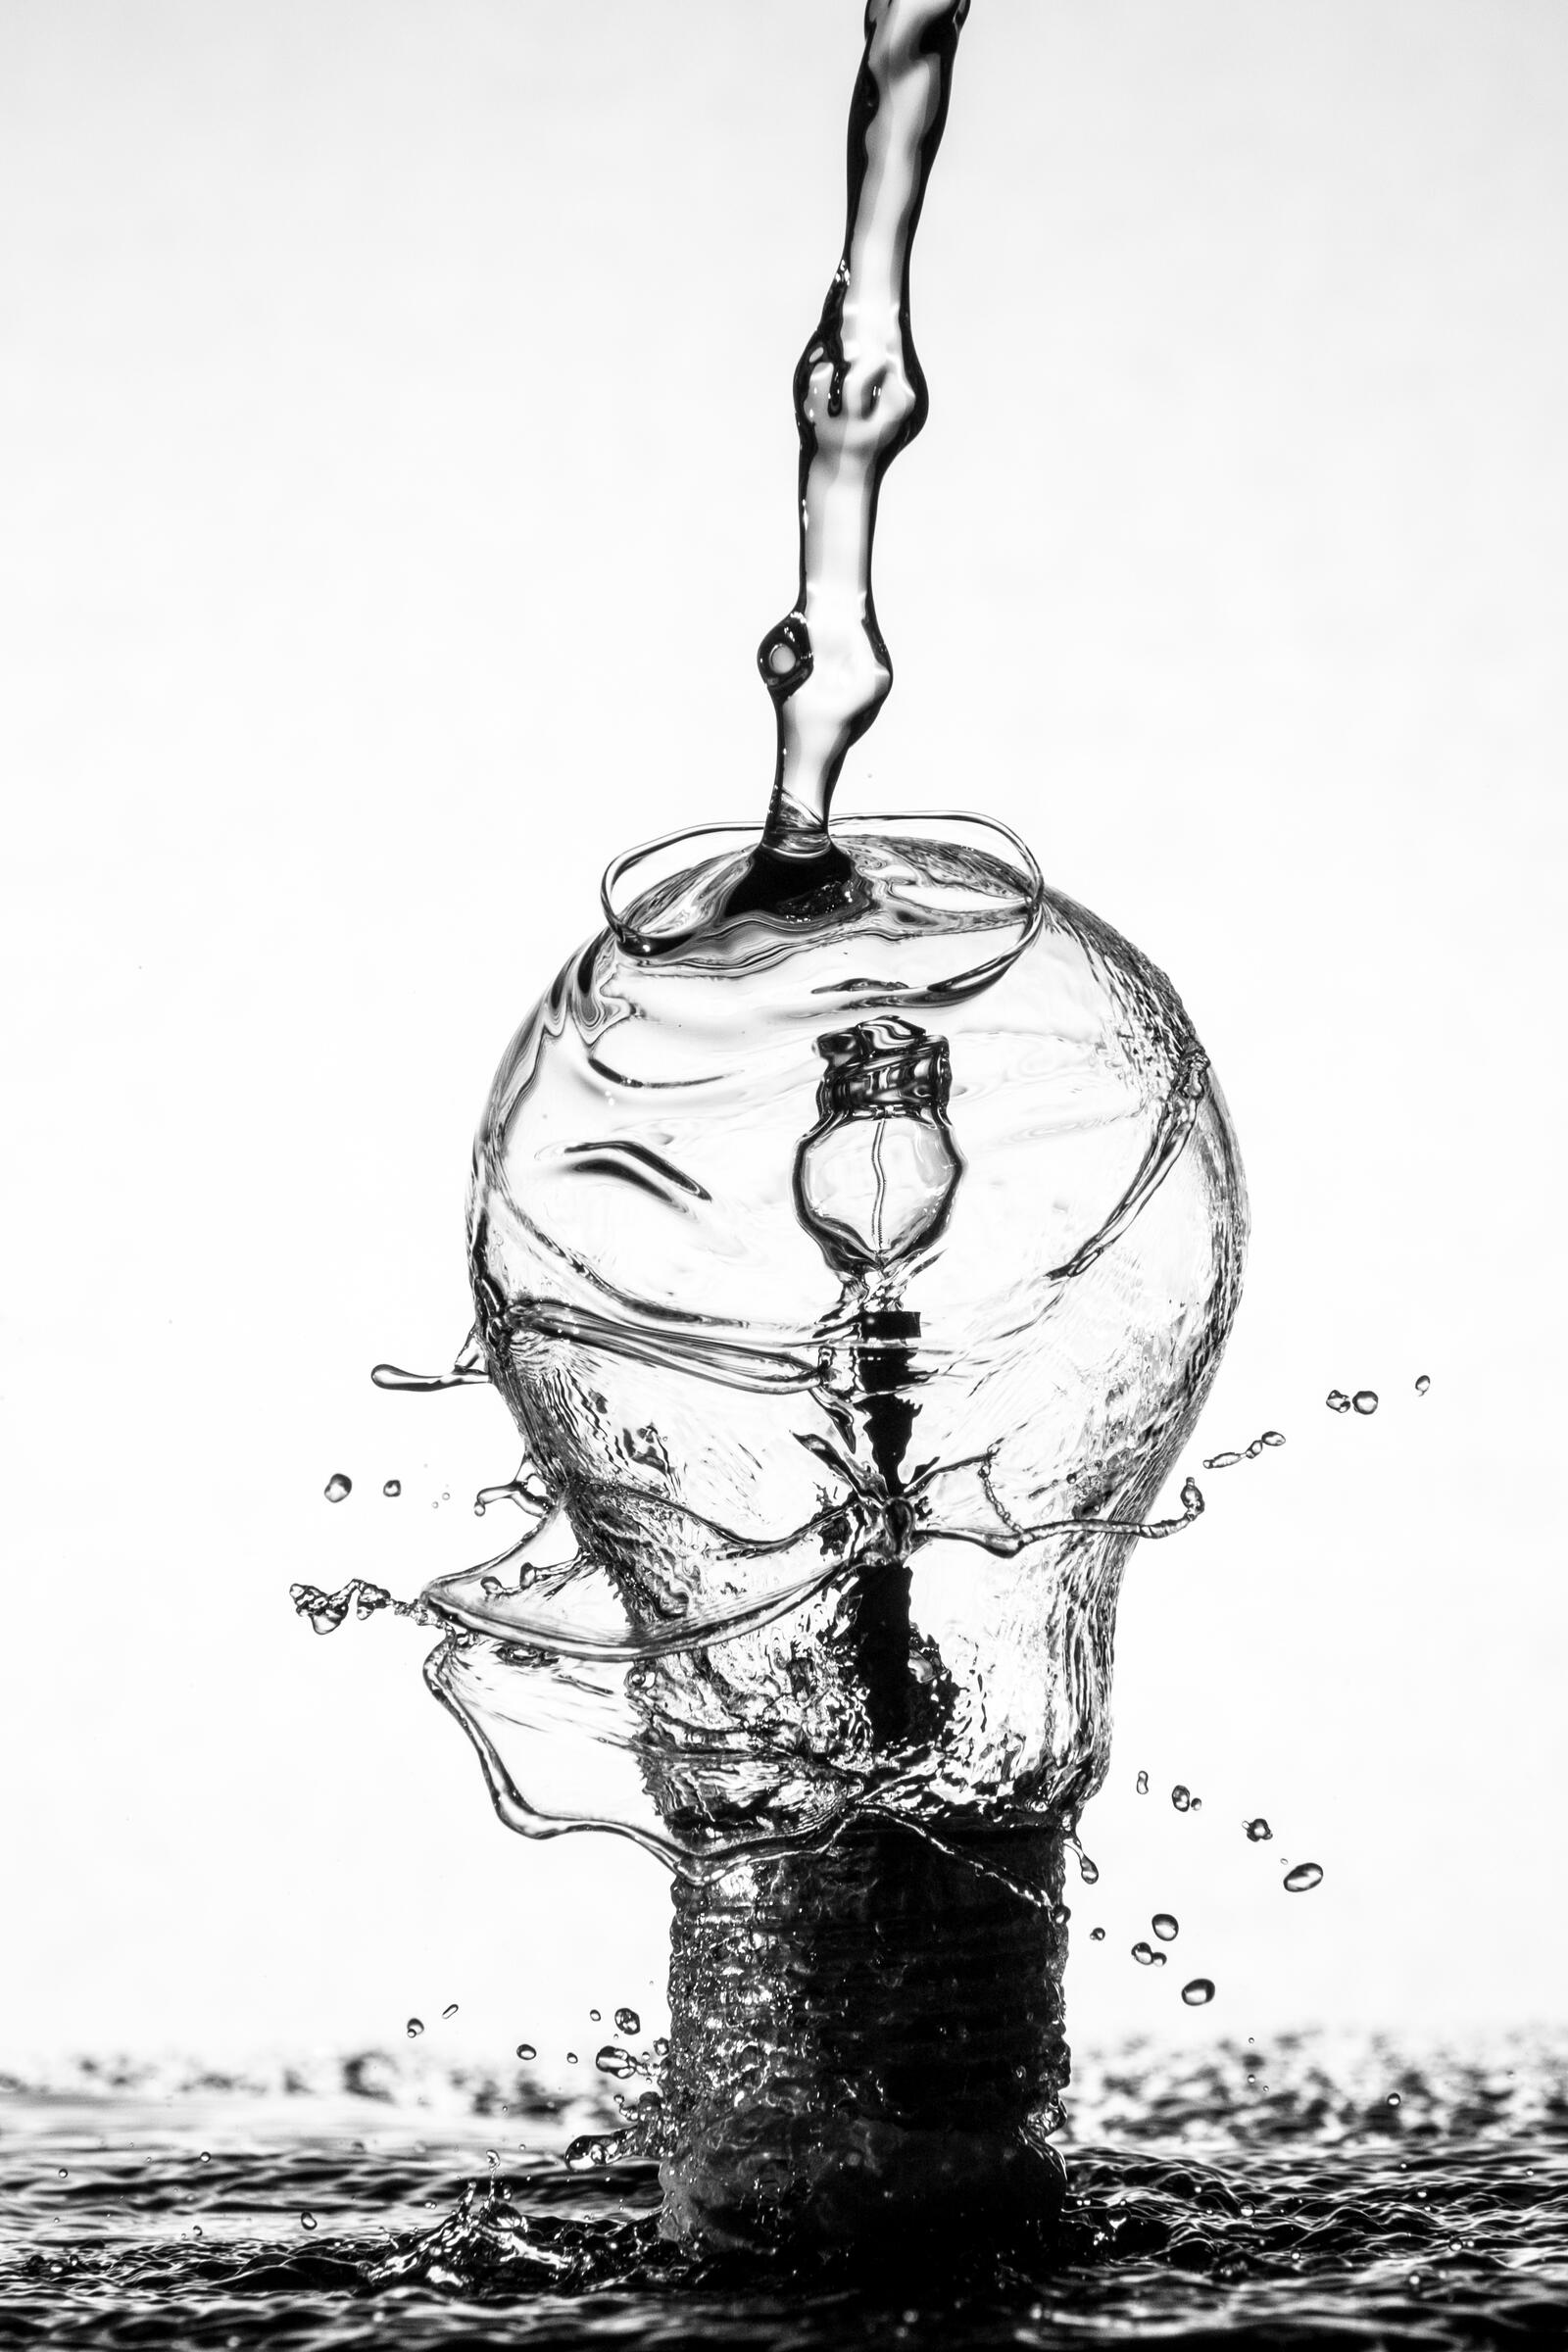 Бесплатное фото Струя воды огибает лампу накаливания